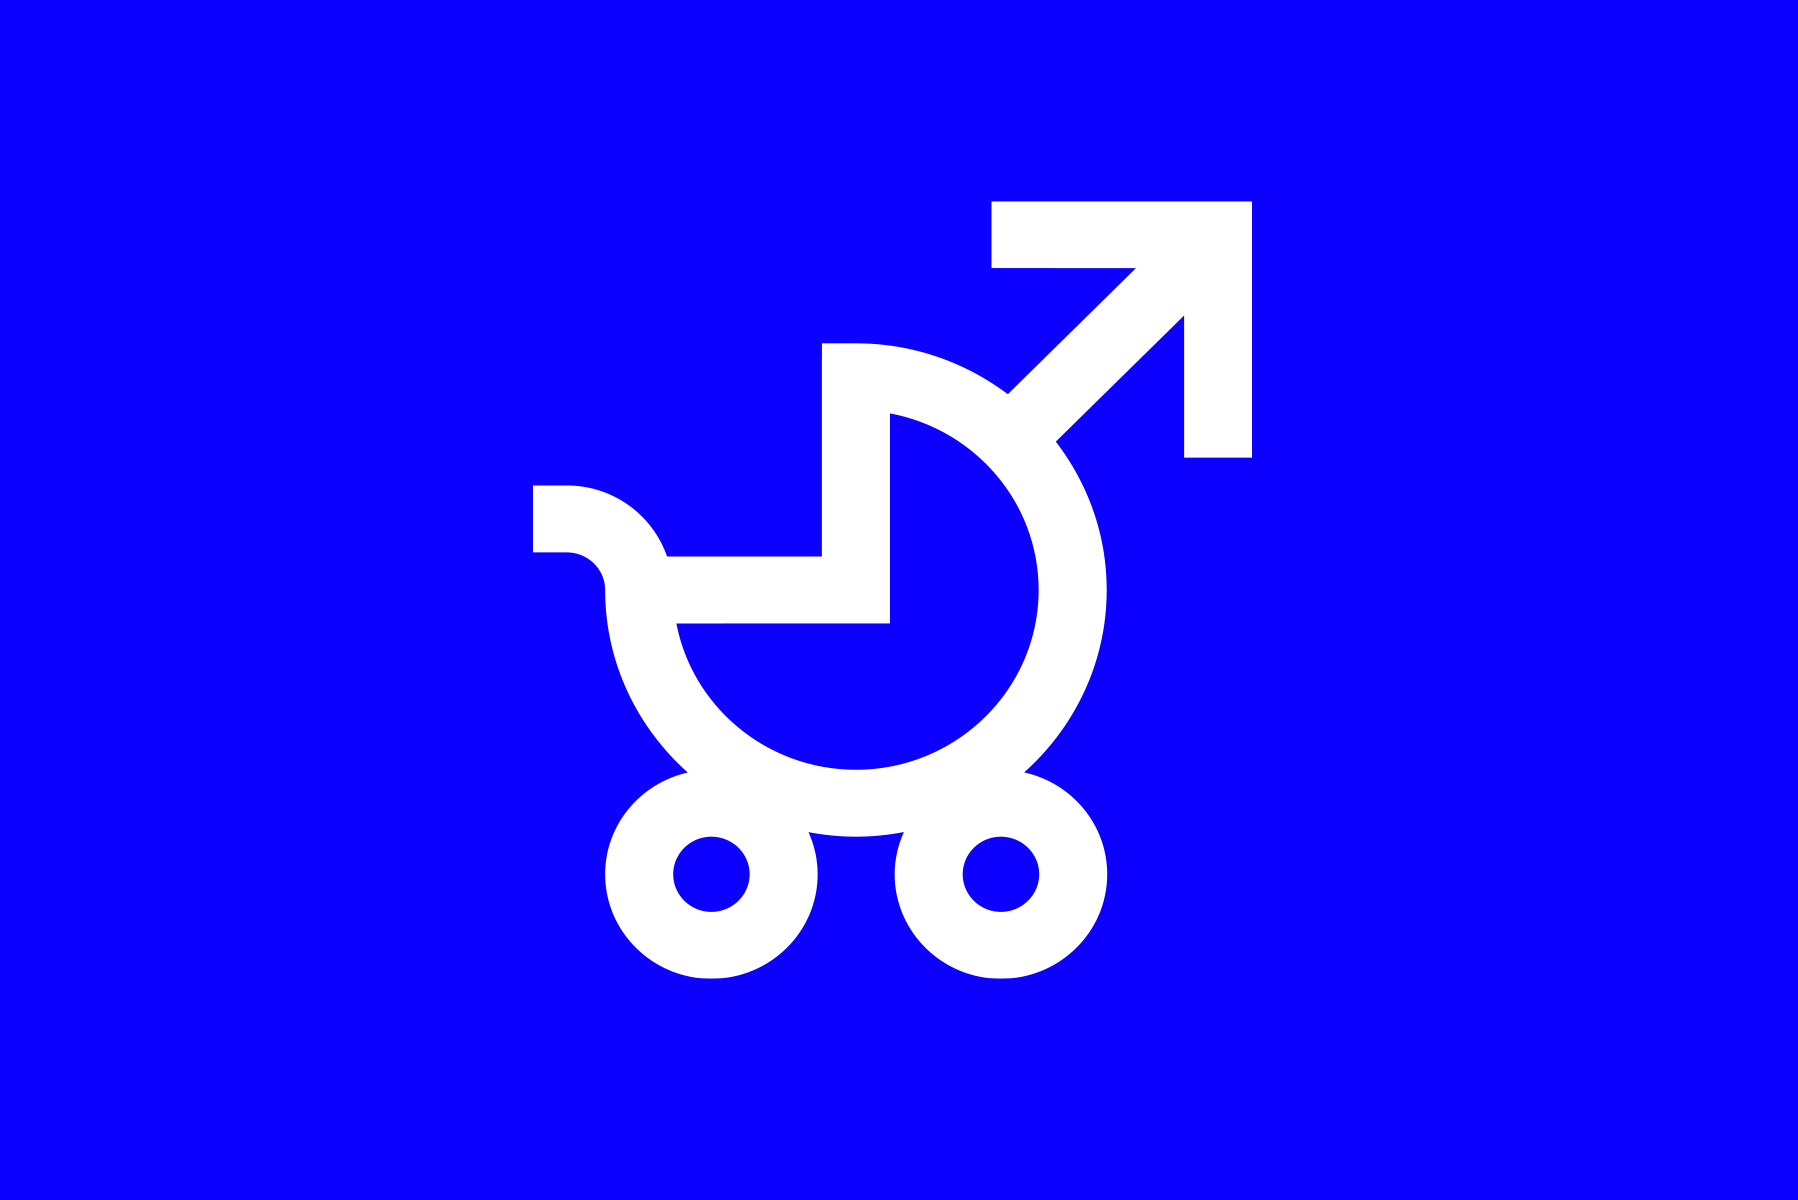 Campaign Branding Logo Vaterschaftsurlaub vom Berner Grafik-Designer Manuel Castellote. Entworfen für Travail.Suisse, ein Dachverband von Schweizer Gewerkschaften